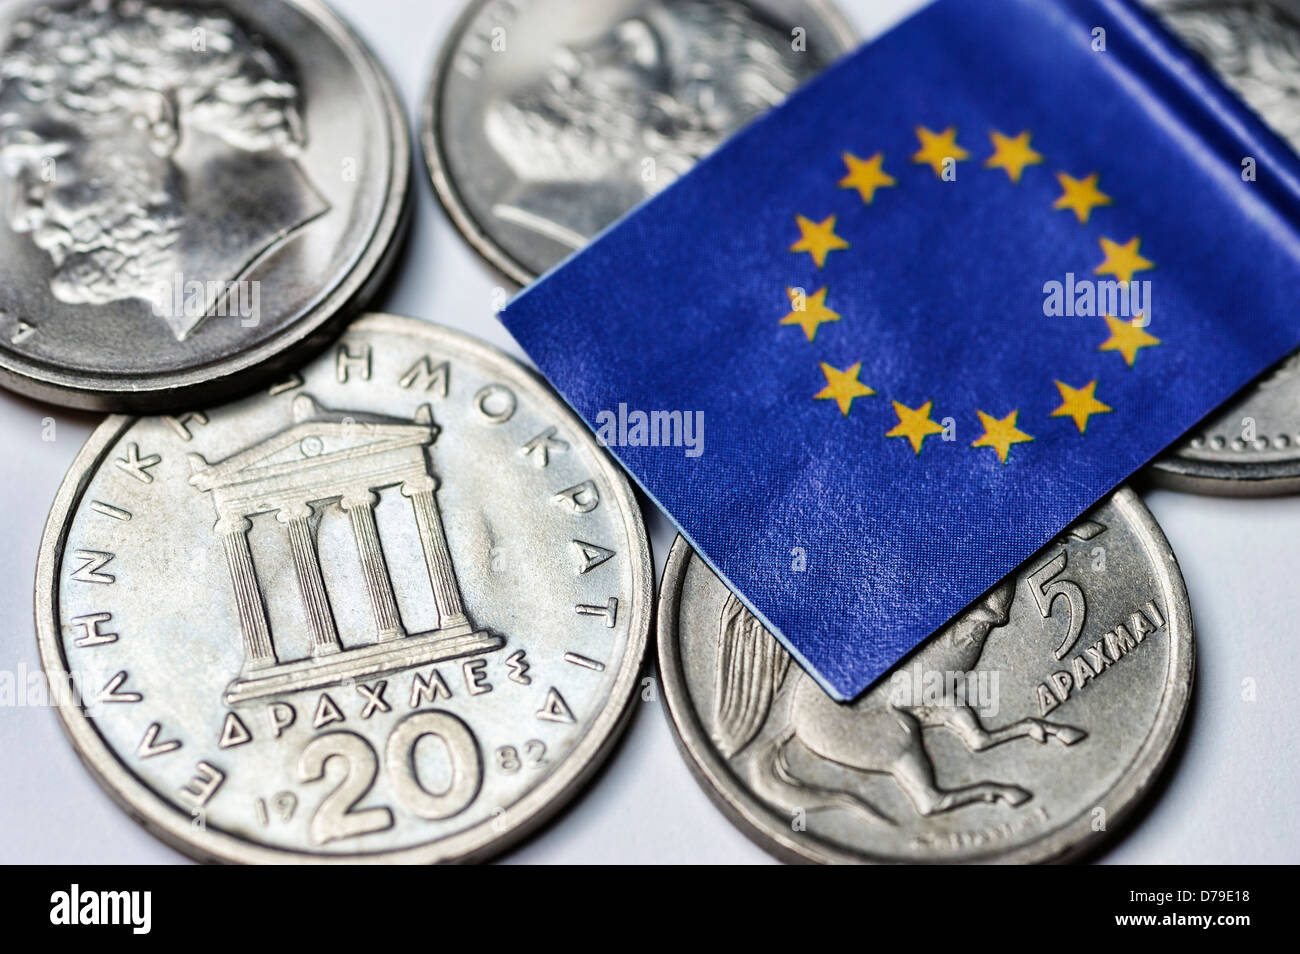 Drachm greco e bandiera UE, euro-climbing al di fuori della Grecia , Griechische Drachme und UE-Fahne, Euro-Ausstieg Griechenlands Foto Stock